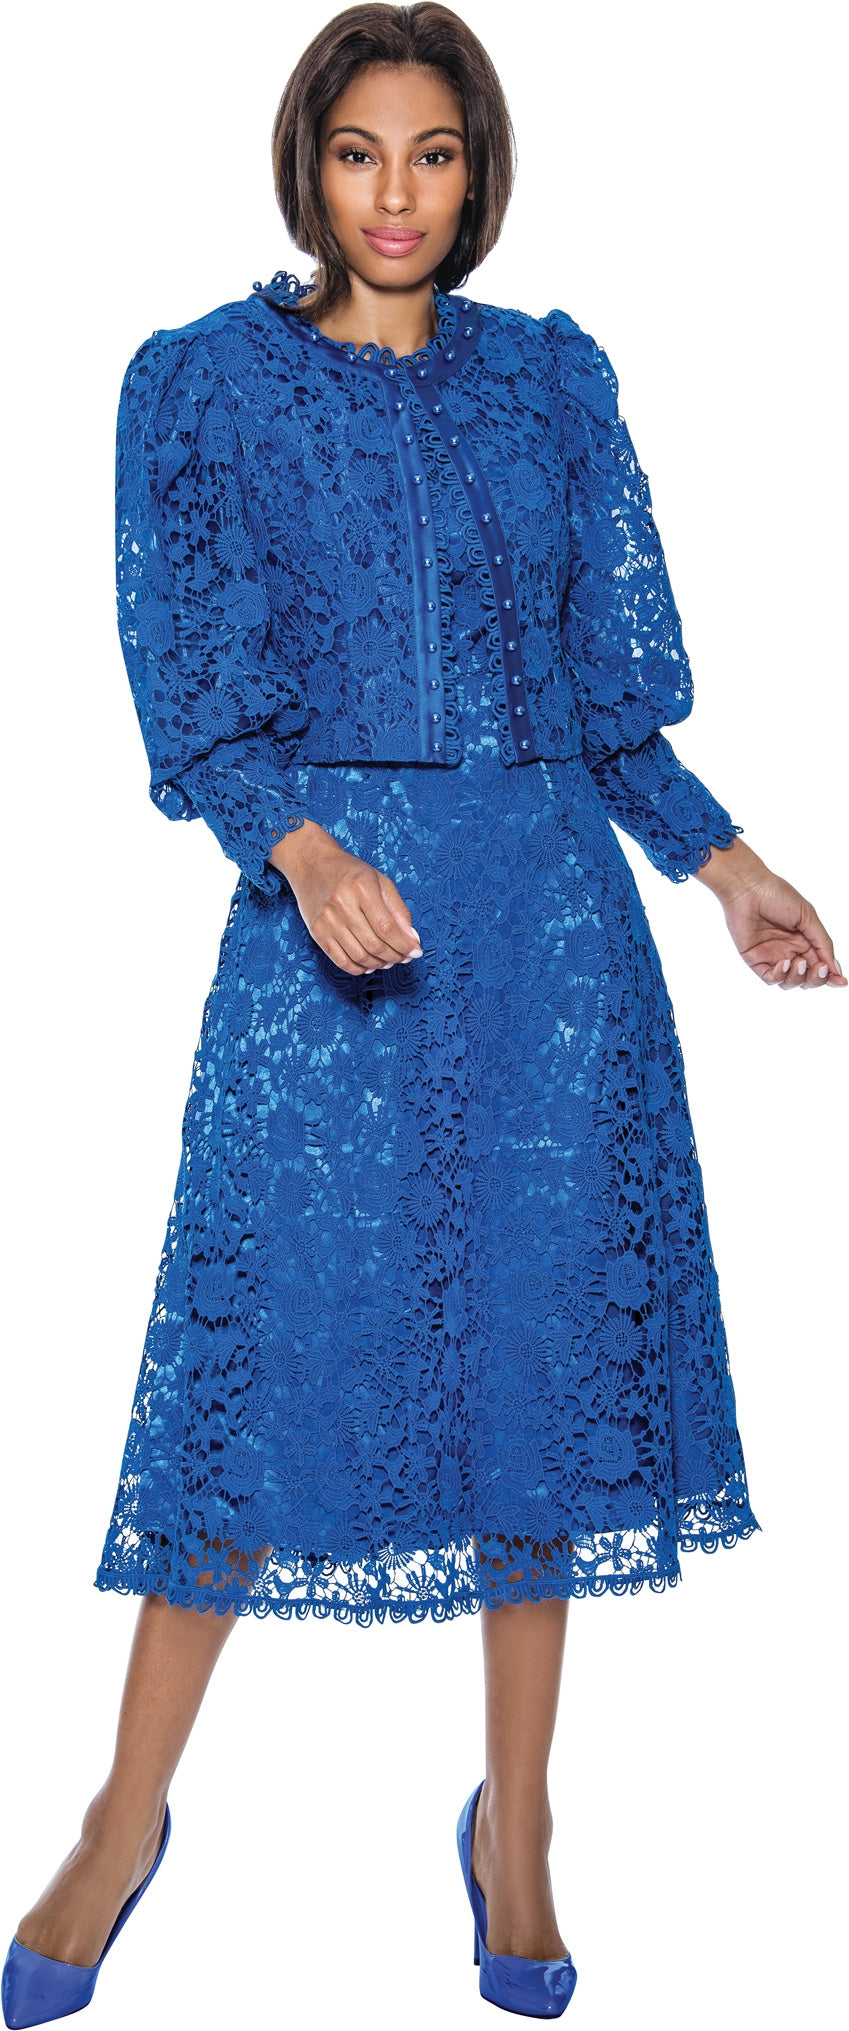 Terramina Church Dress 7051-Royal Blue - Church Suits For Less